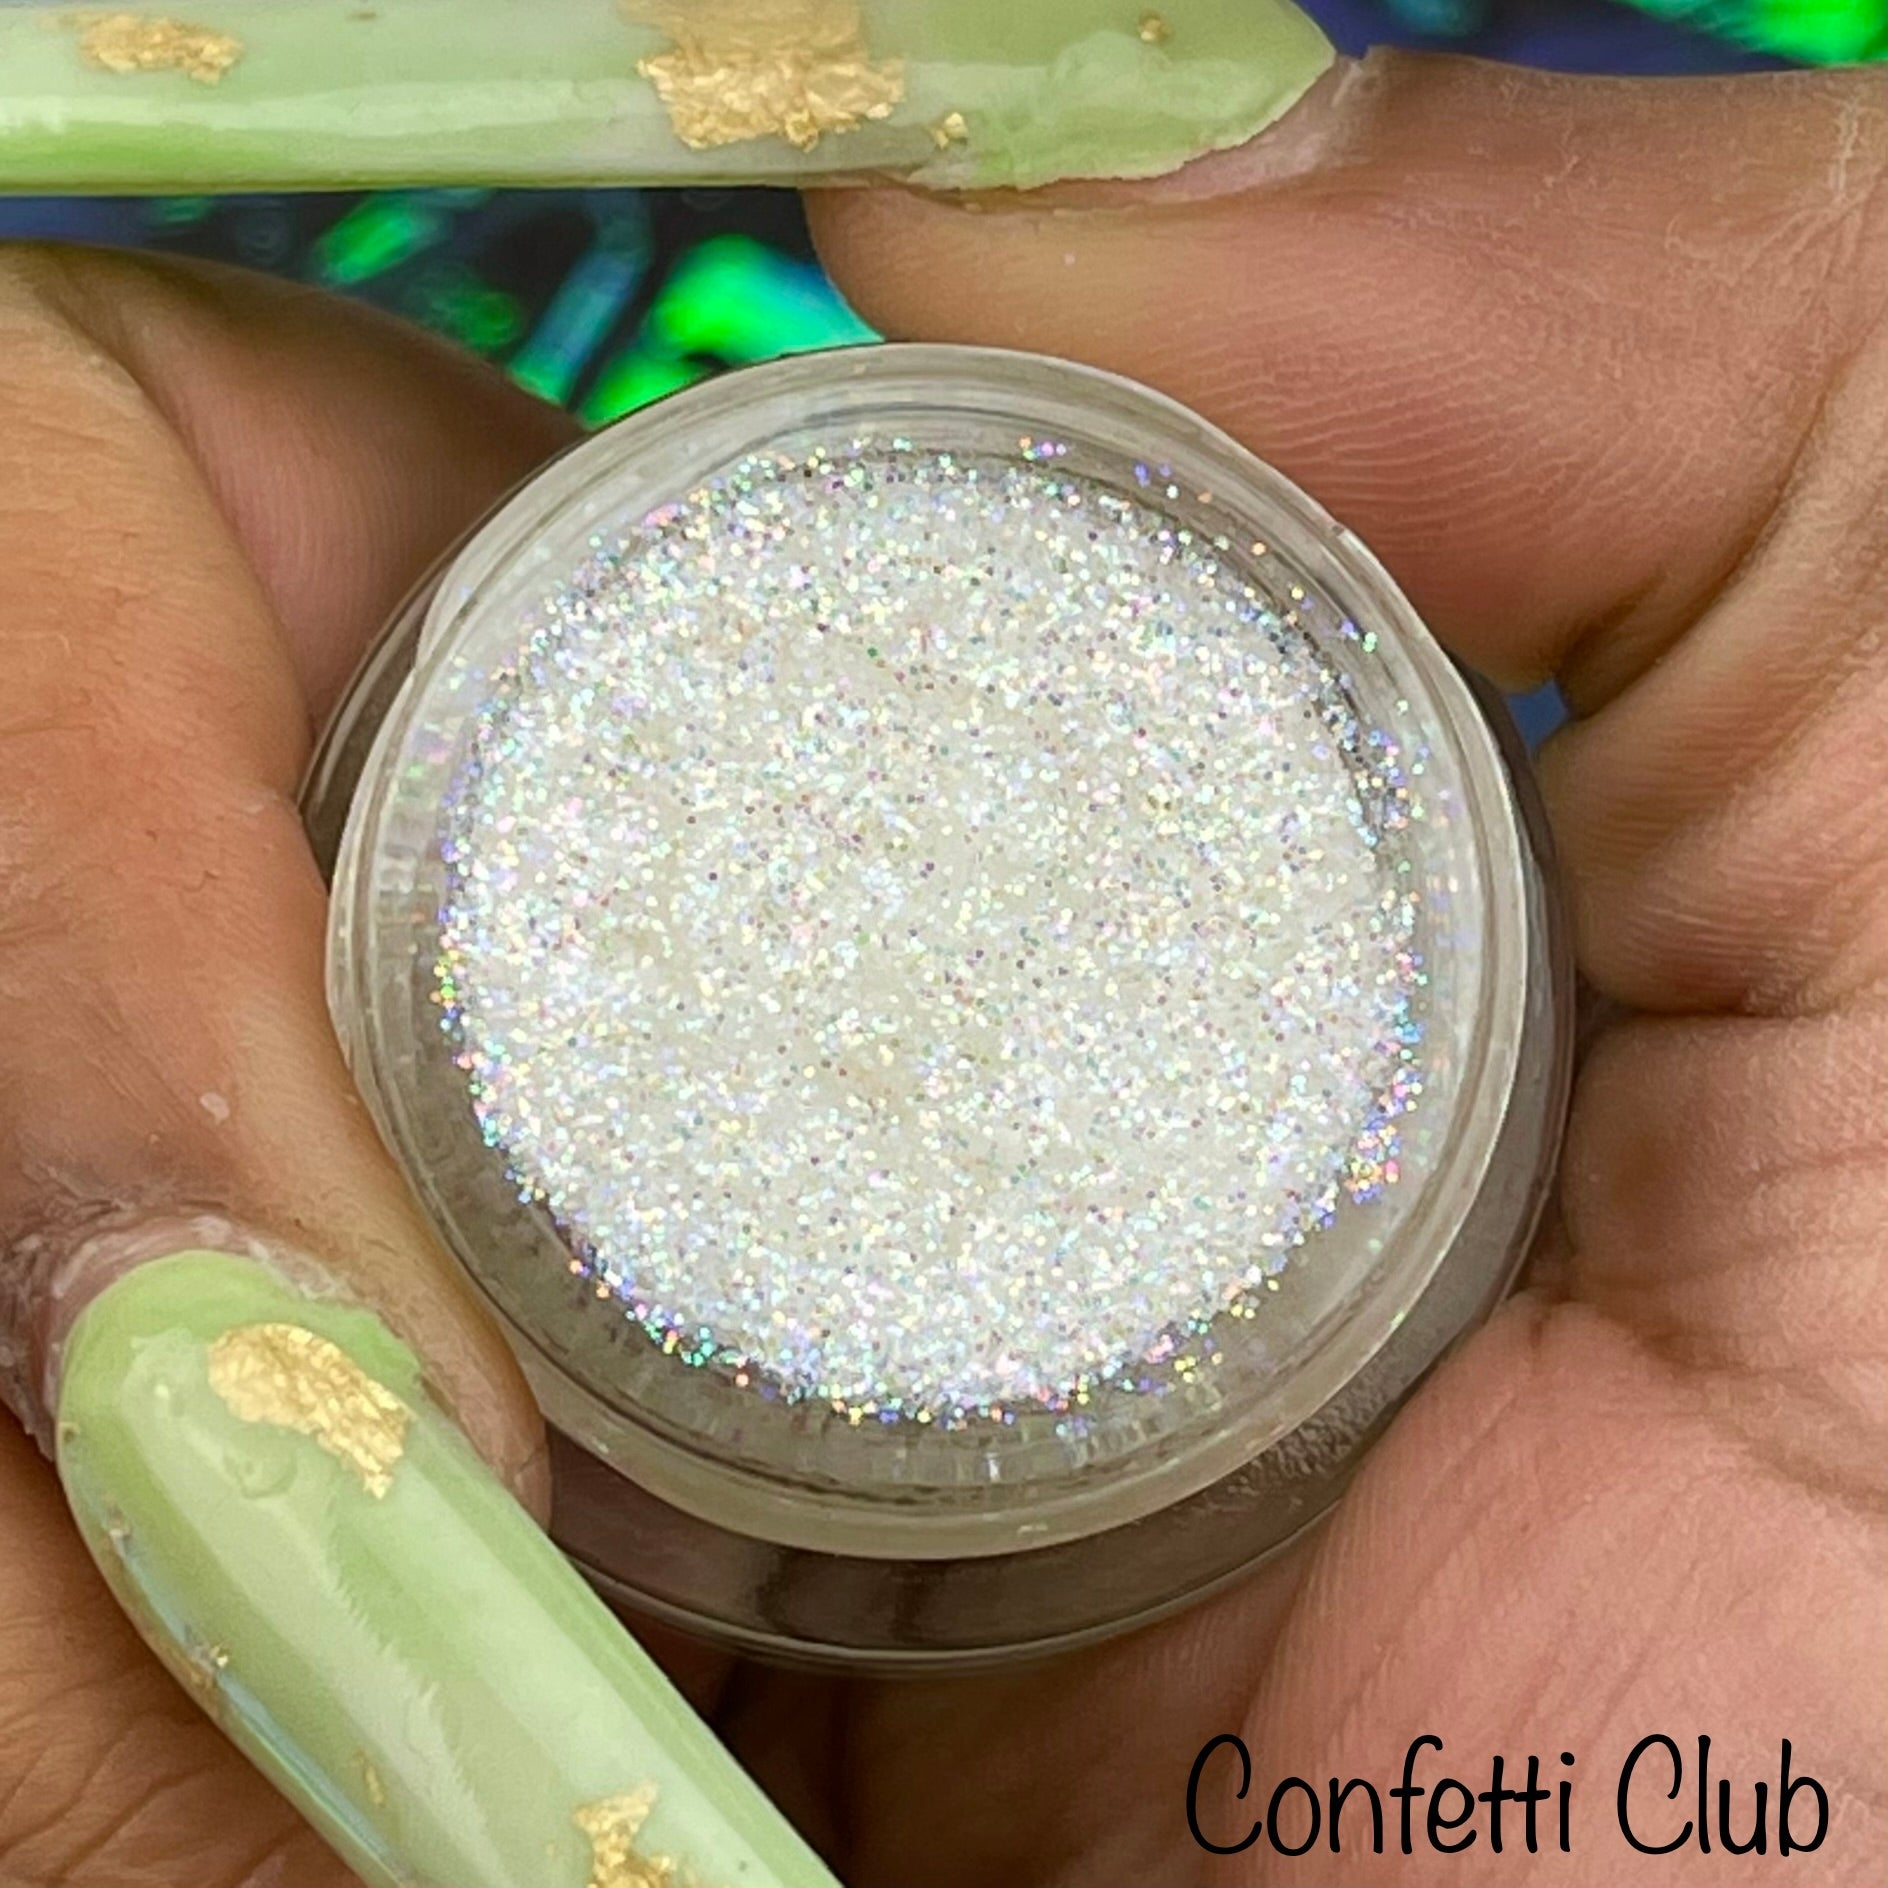 Confetti – Glitter Makes It